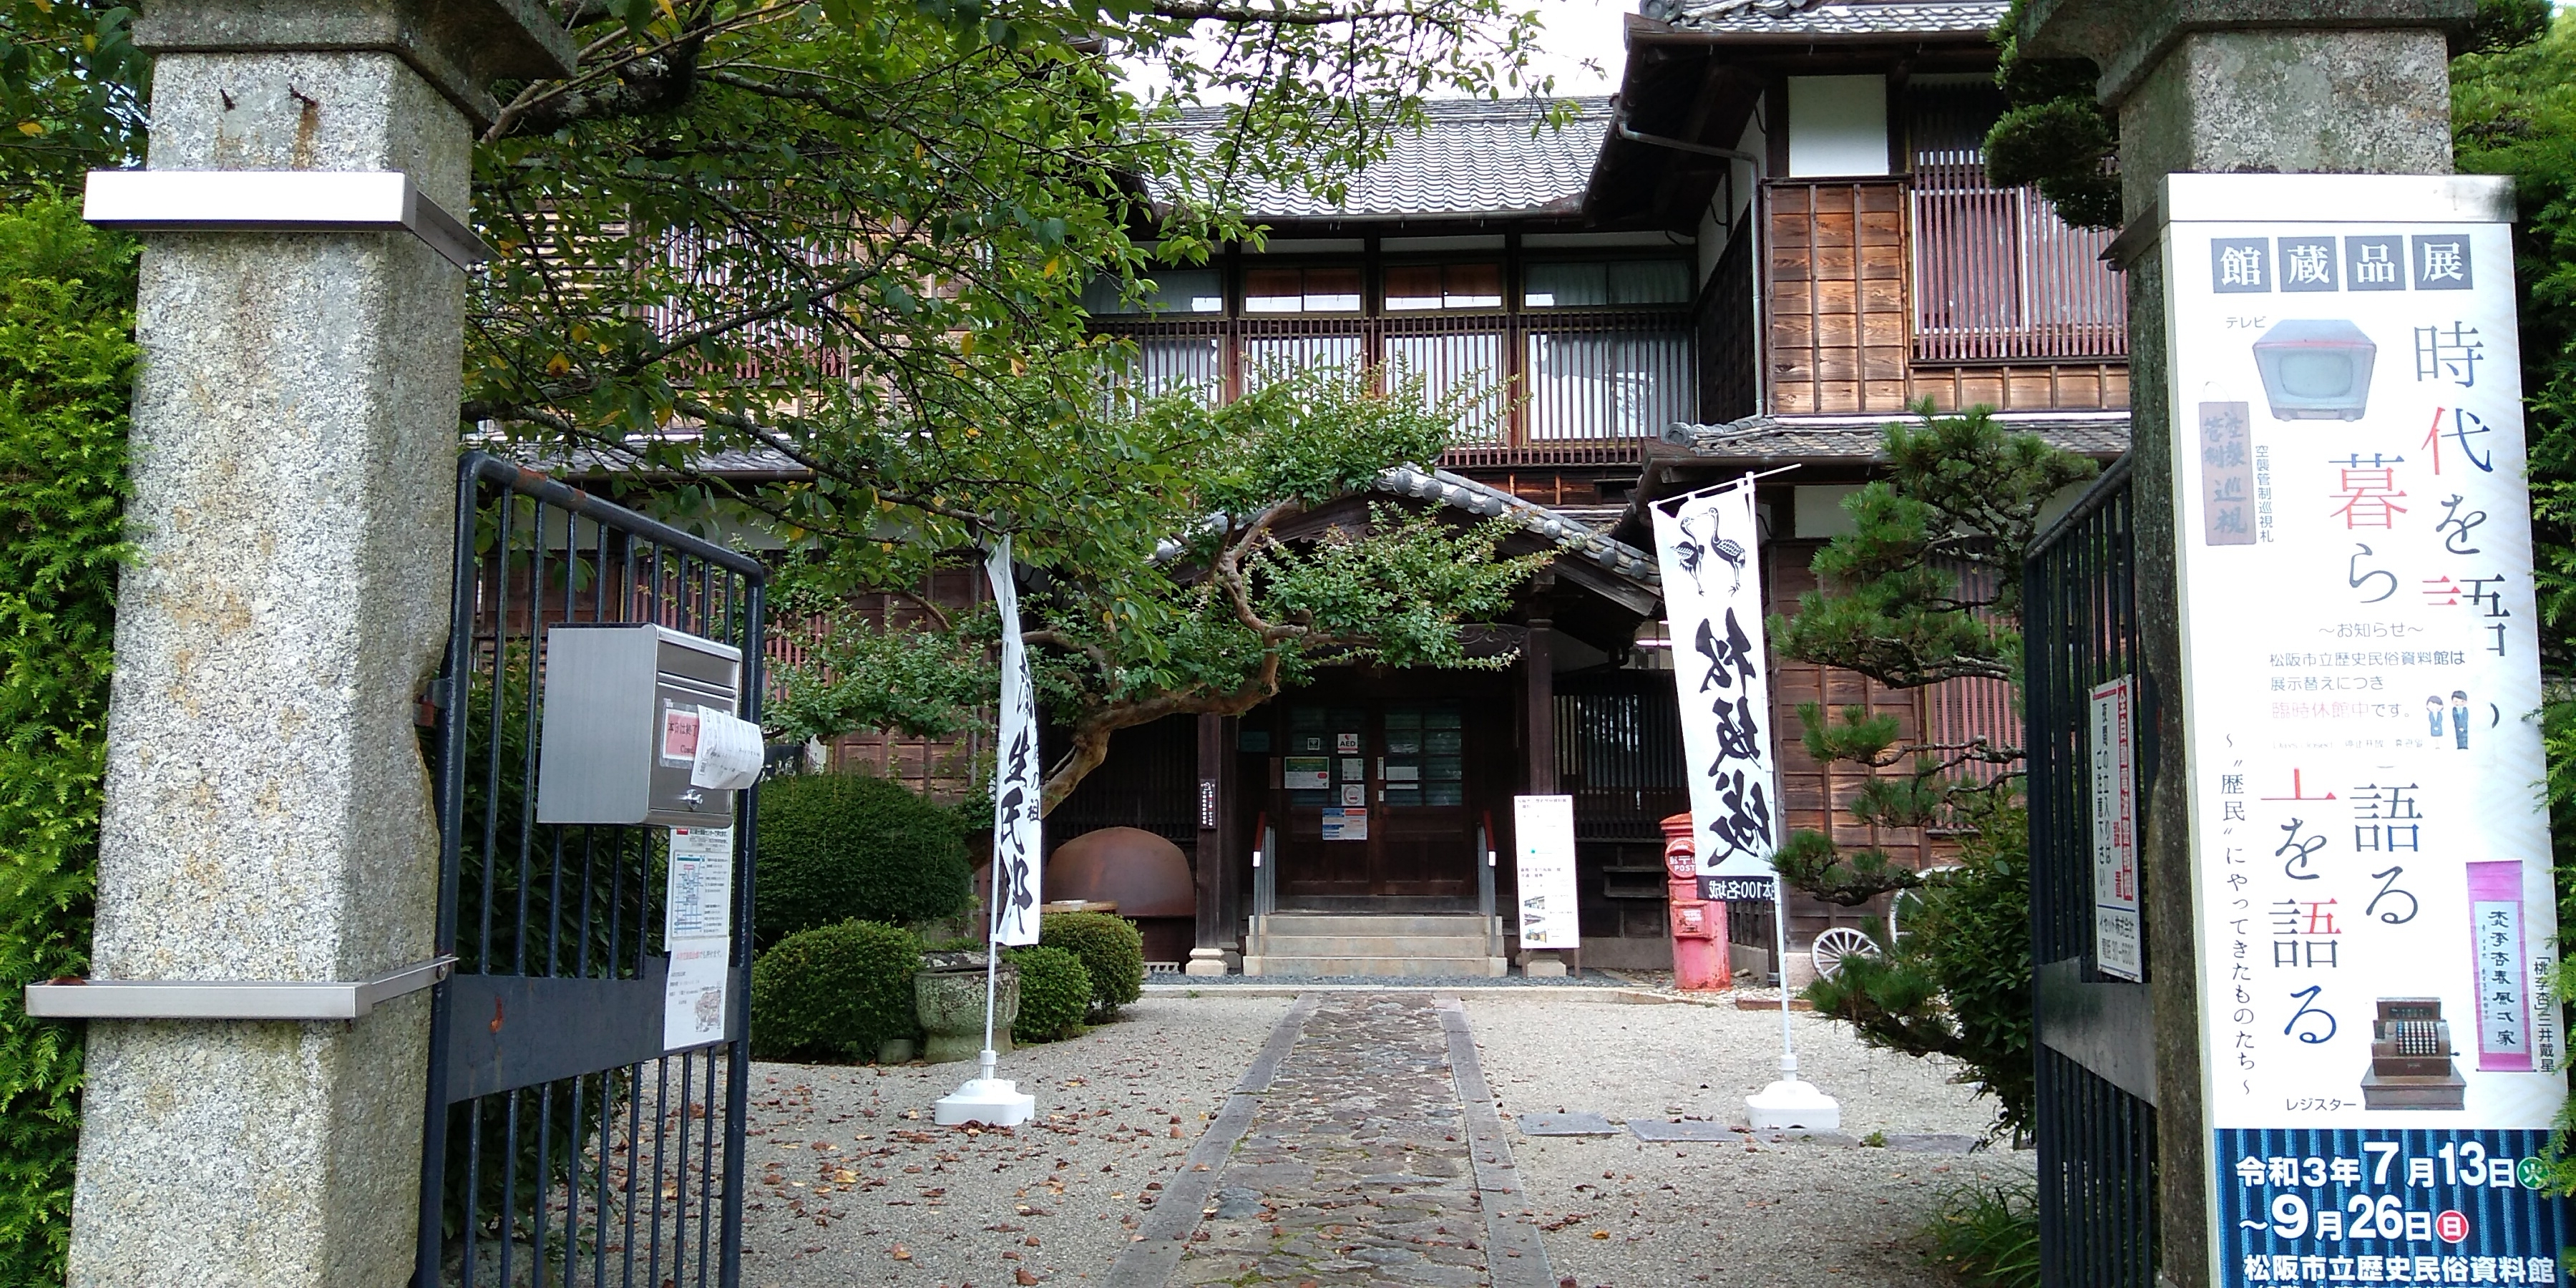 松阪市立歴史民俗資料館